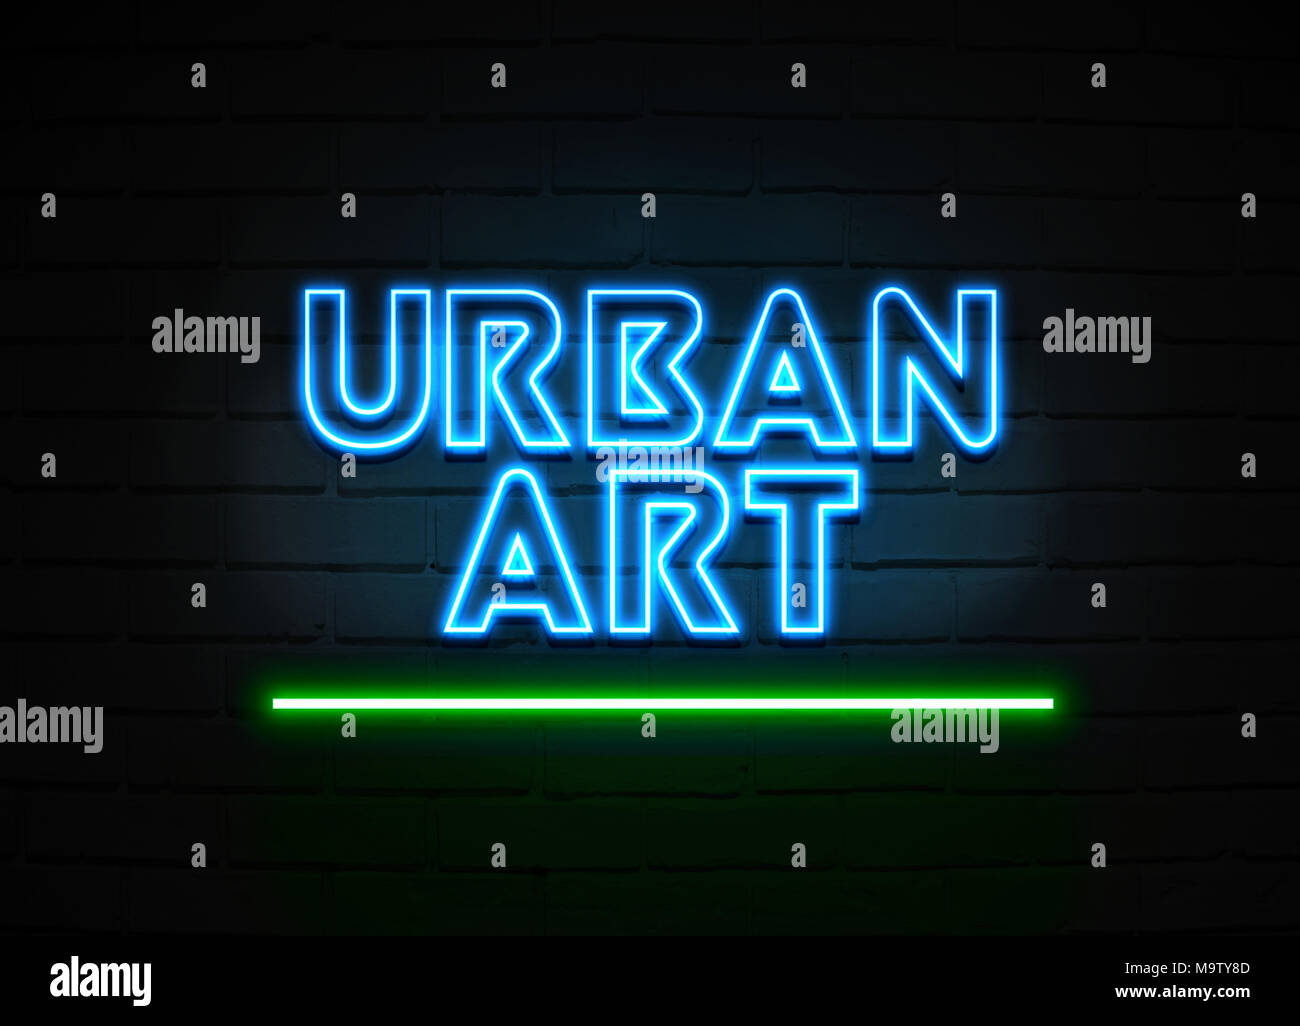 L'Art urbain en néon - Glowing Neon Sign sur mur brickwall - rendu 3D illustration libres de droits. Banque D'Images